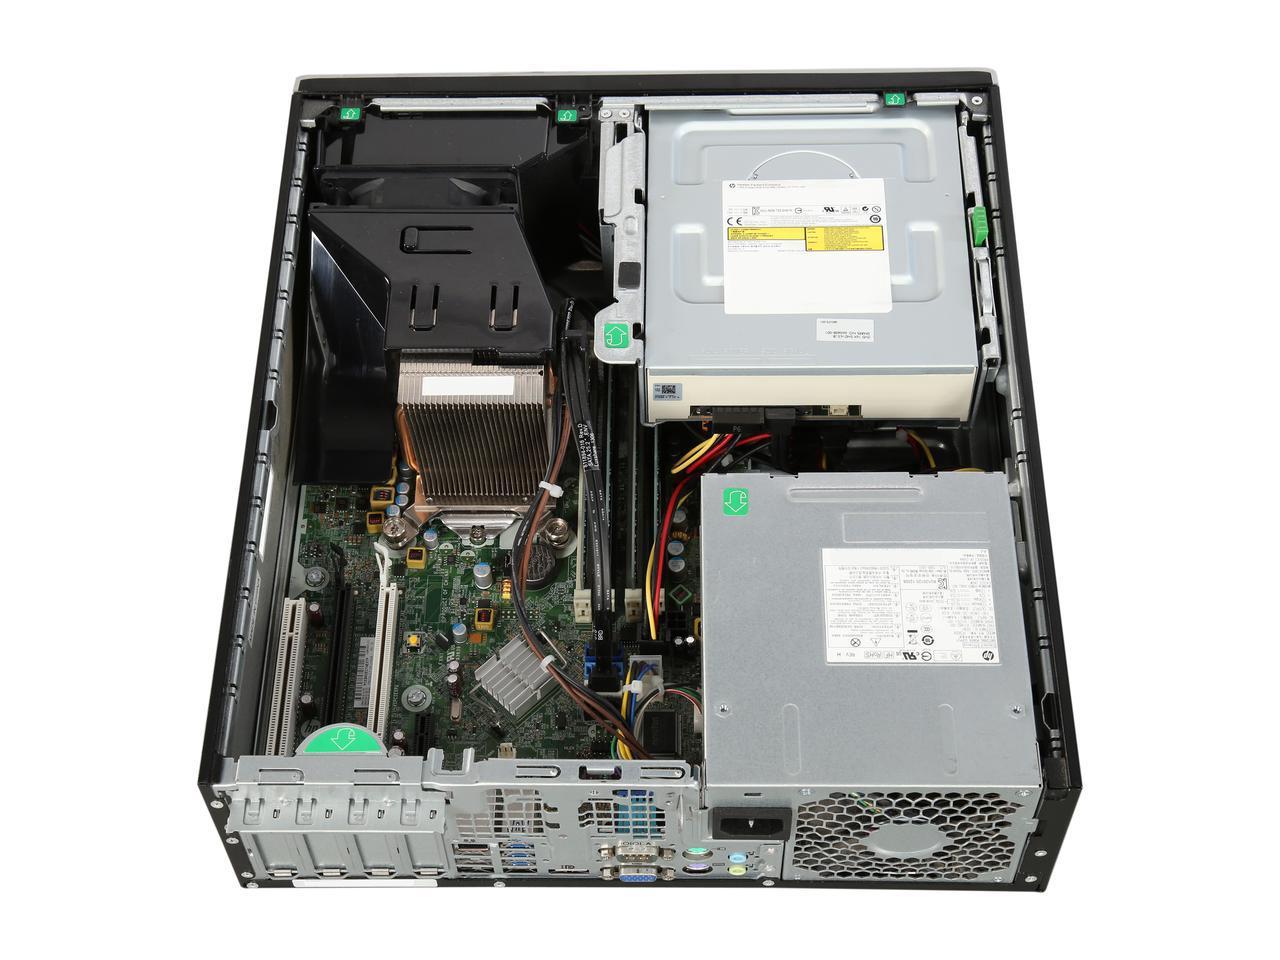 HP Elite 8300 SFF Computer, Intel Quad-Core i5 3rd Gen CPU, 16GB